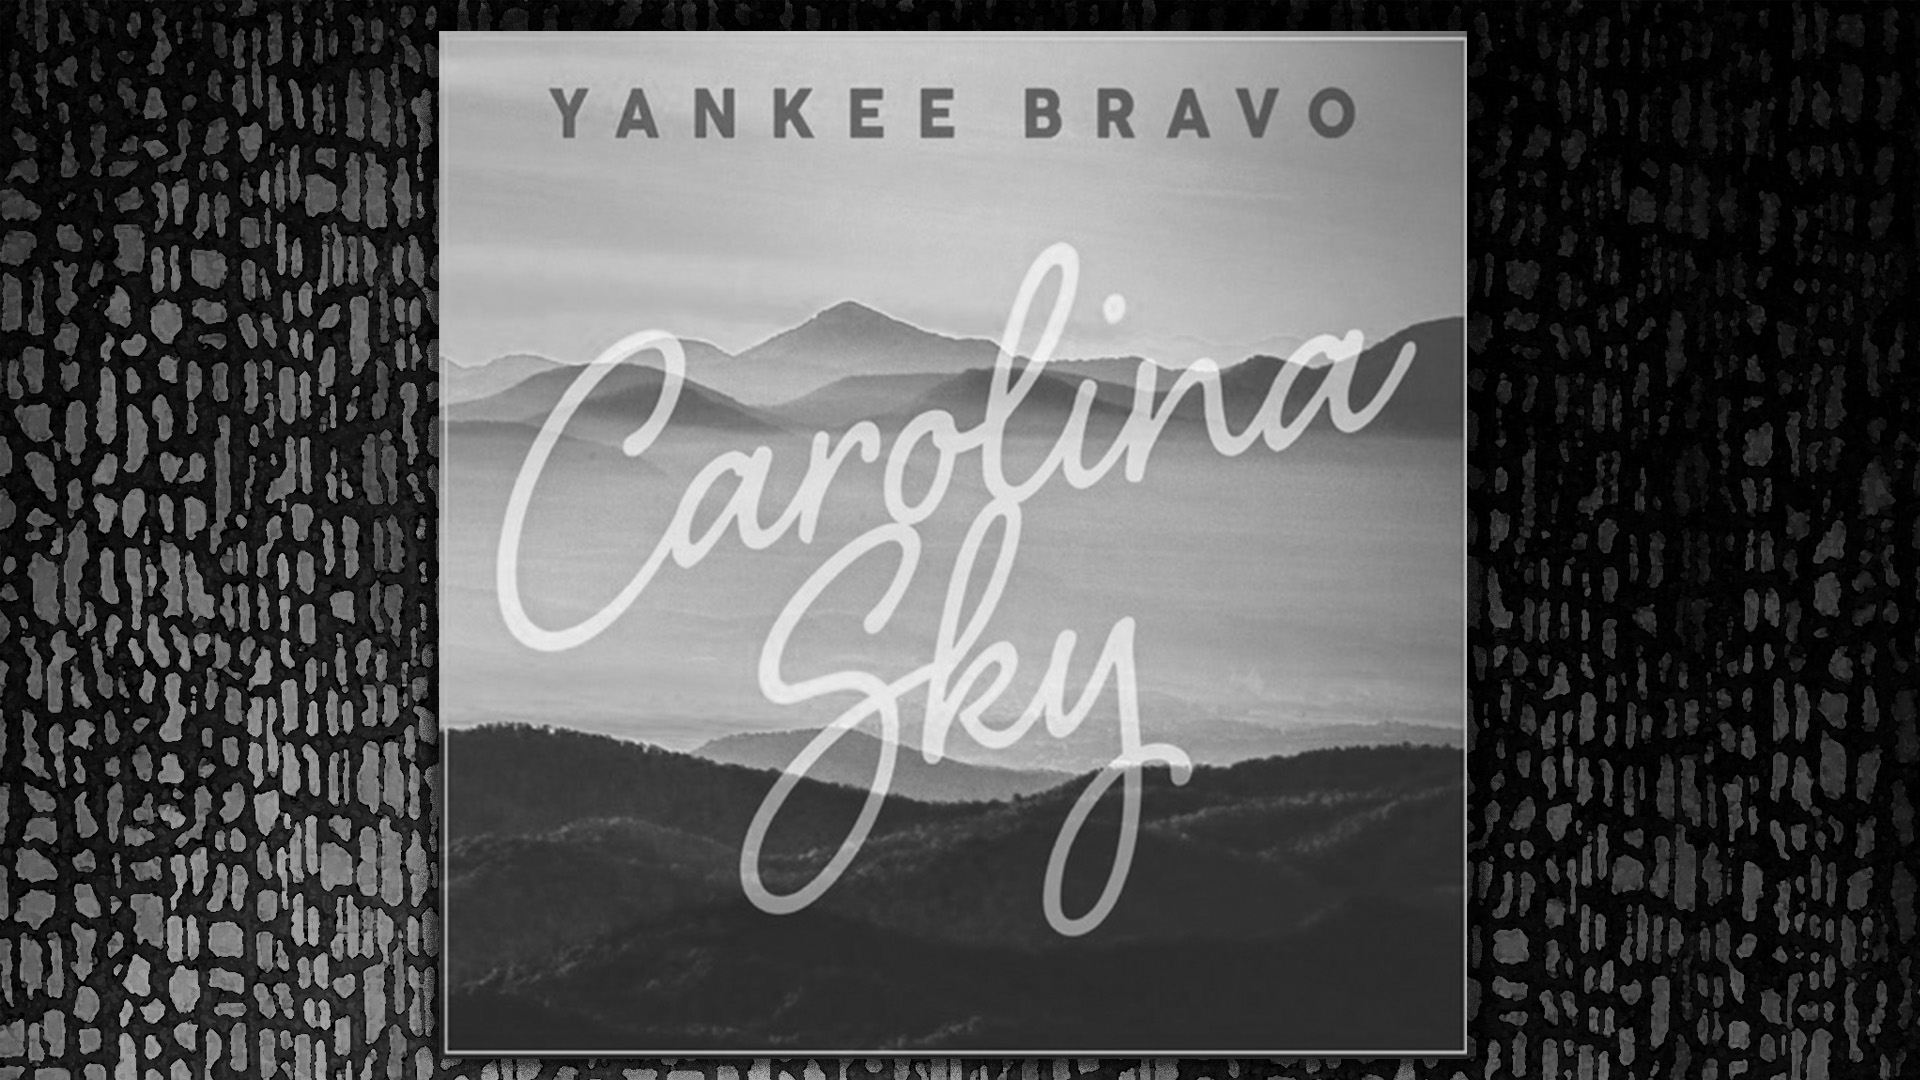  Carolina Sky - Yankee Bravo